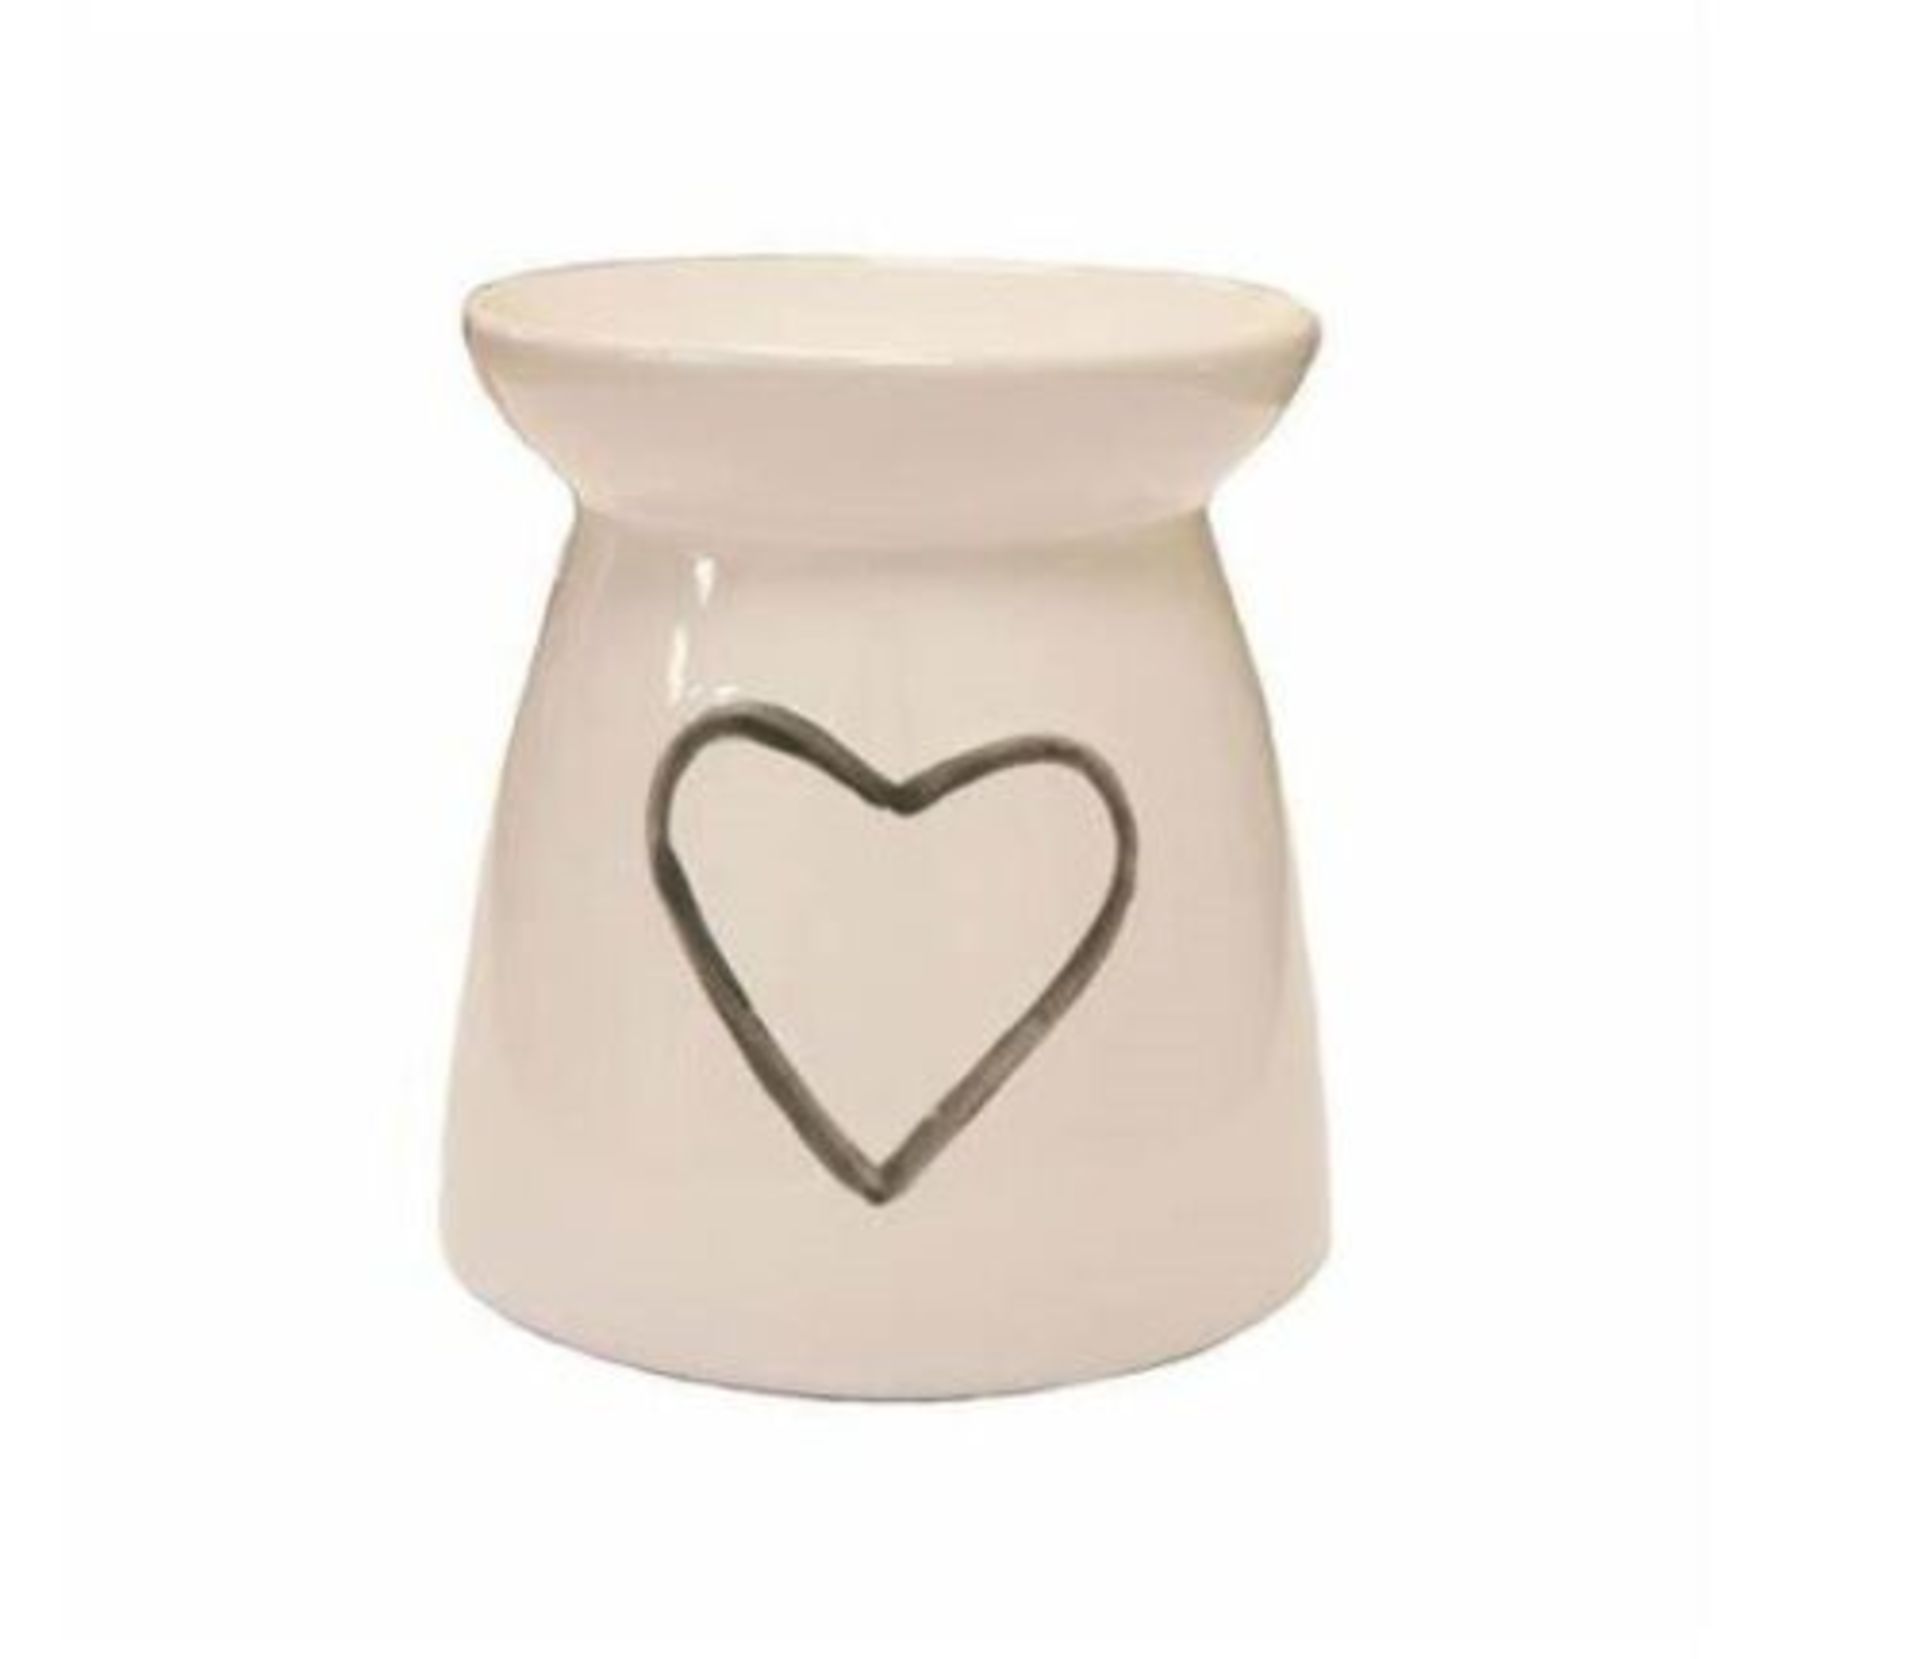 20 x White Ceramic Heart Tea Light Oil Burner Grey With Heart